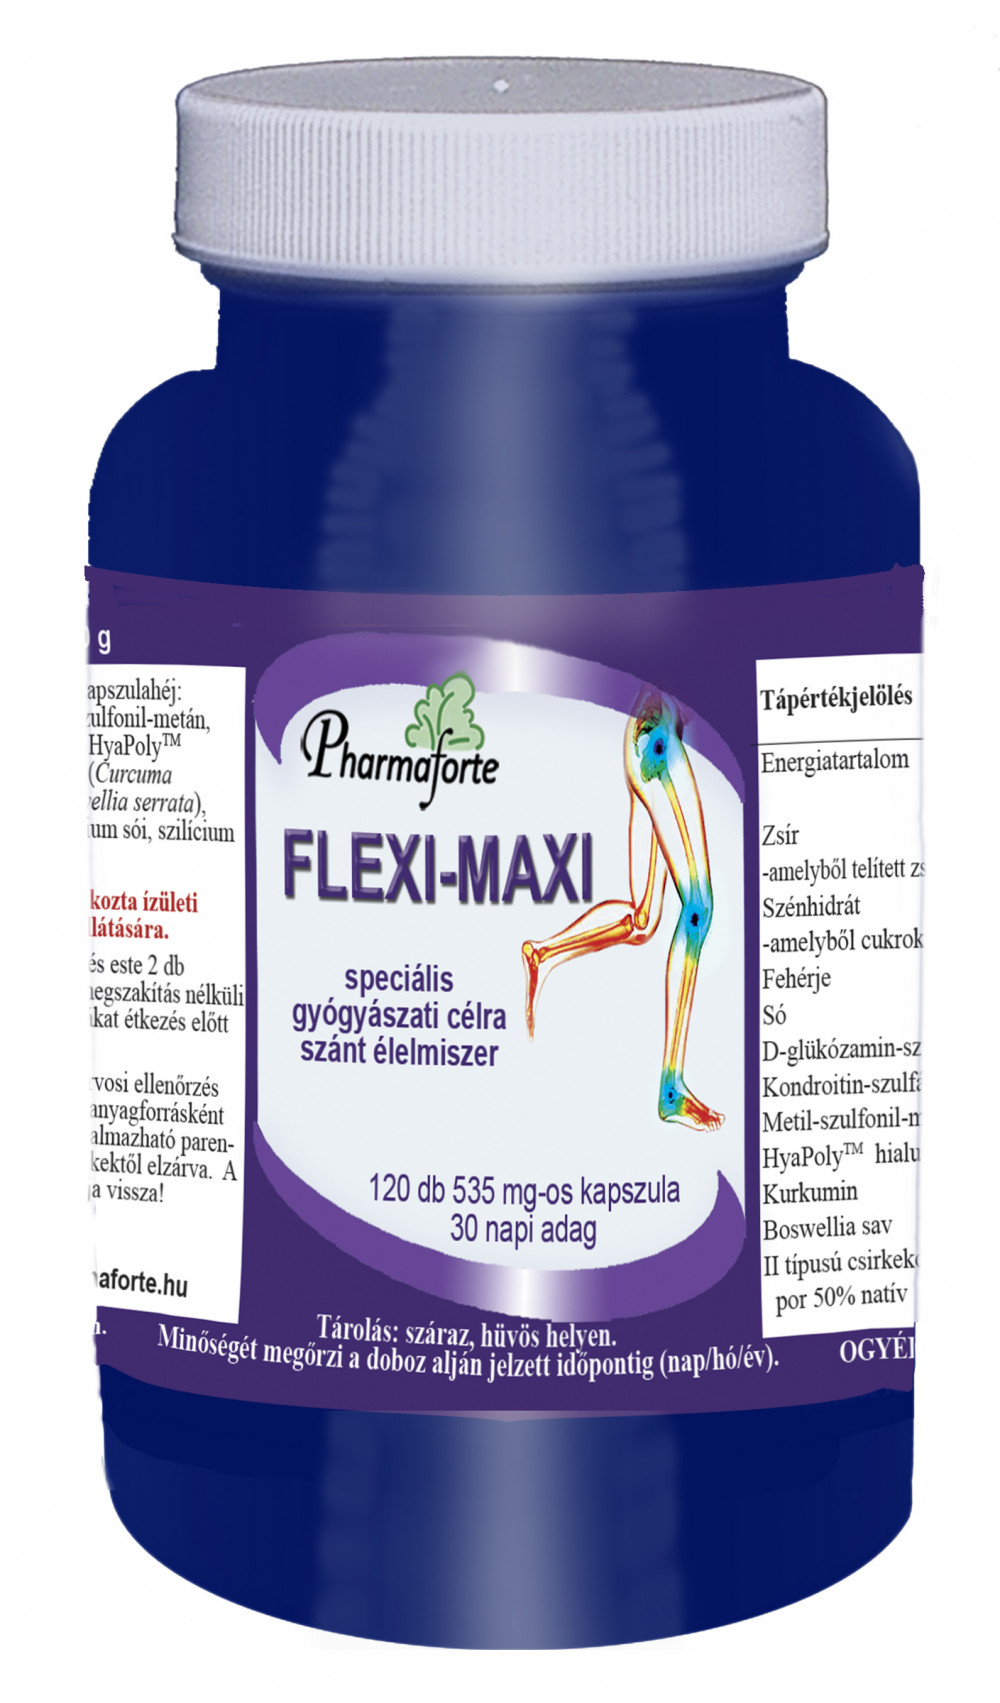 Flexi-maxi speciális gyógyászati célra szánt élelmiszer kapszula 120 db